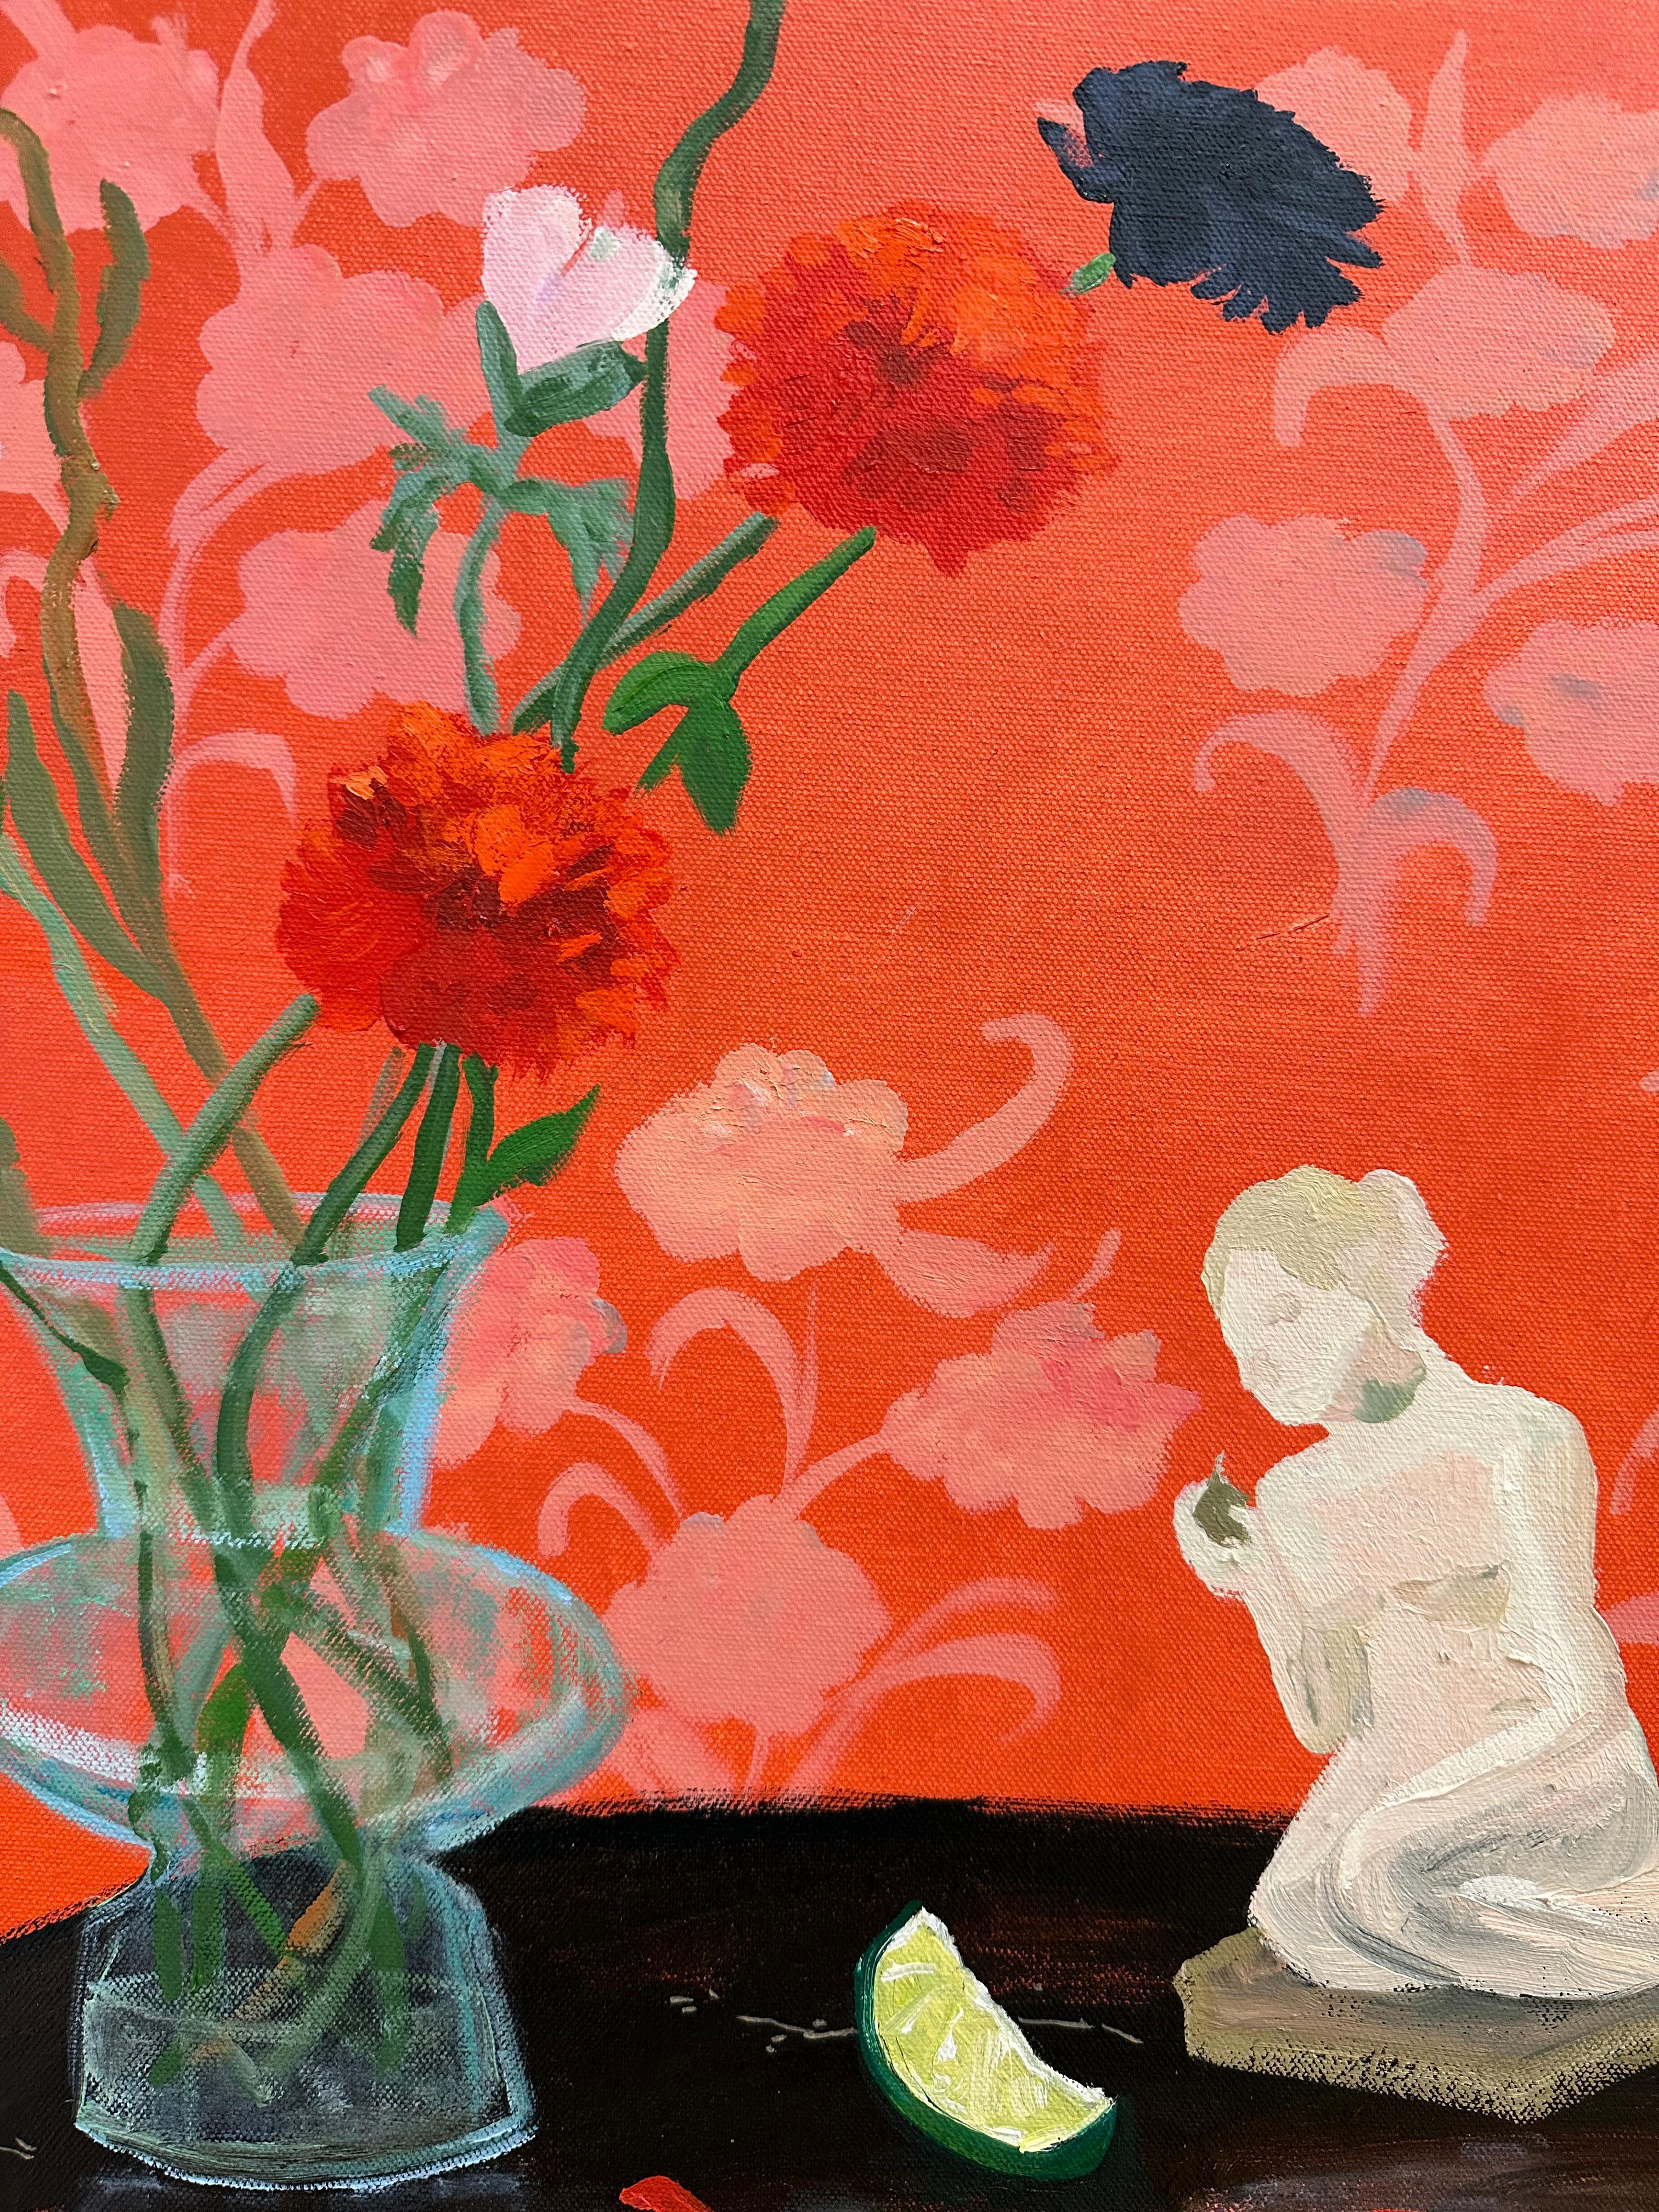 Une scène d'intérieur lumineuse et accueillante avec une nature morte de fleurs dans un vase en verre à côté d'une figurine de femme nue et d'une tranche de citron vert. La table est magnifiquement complétée par le papier peint à motifs floraux